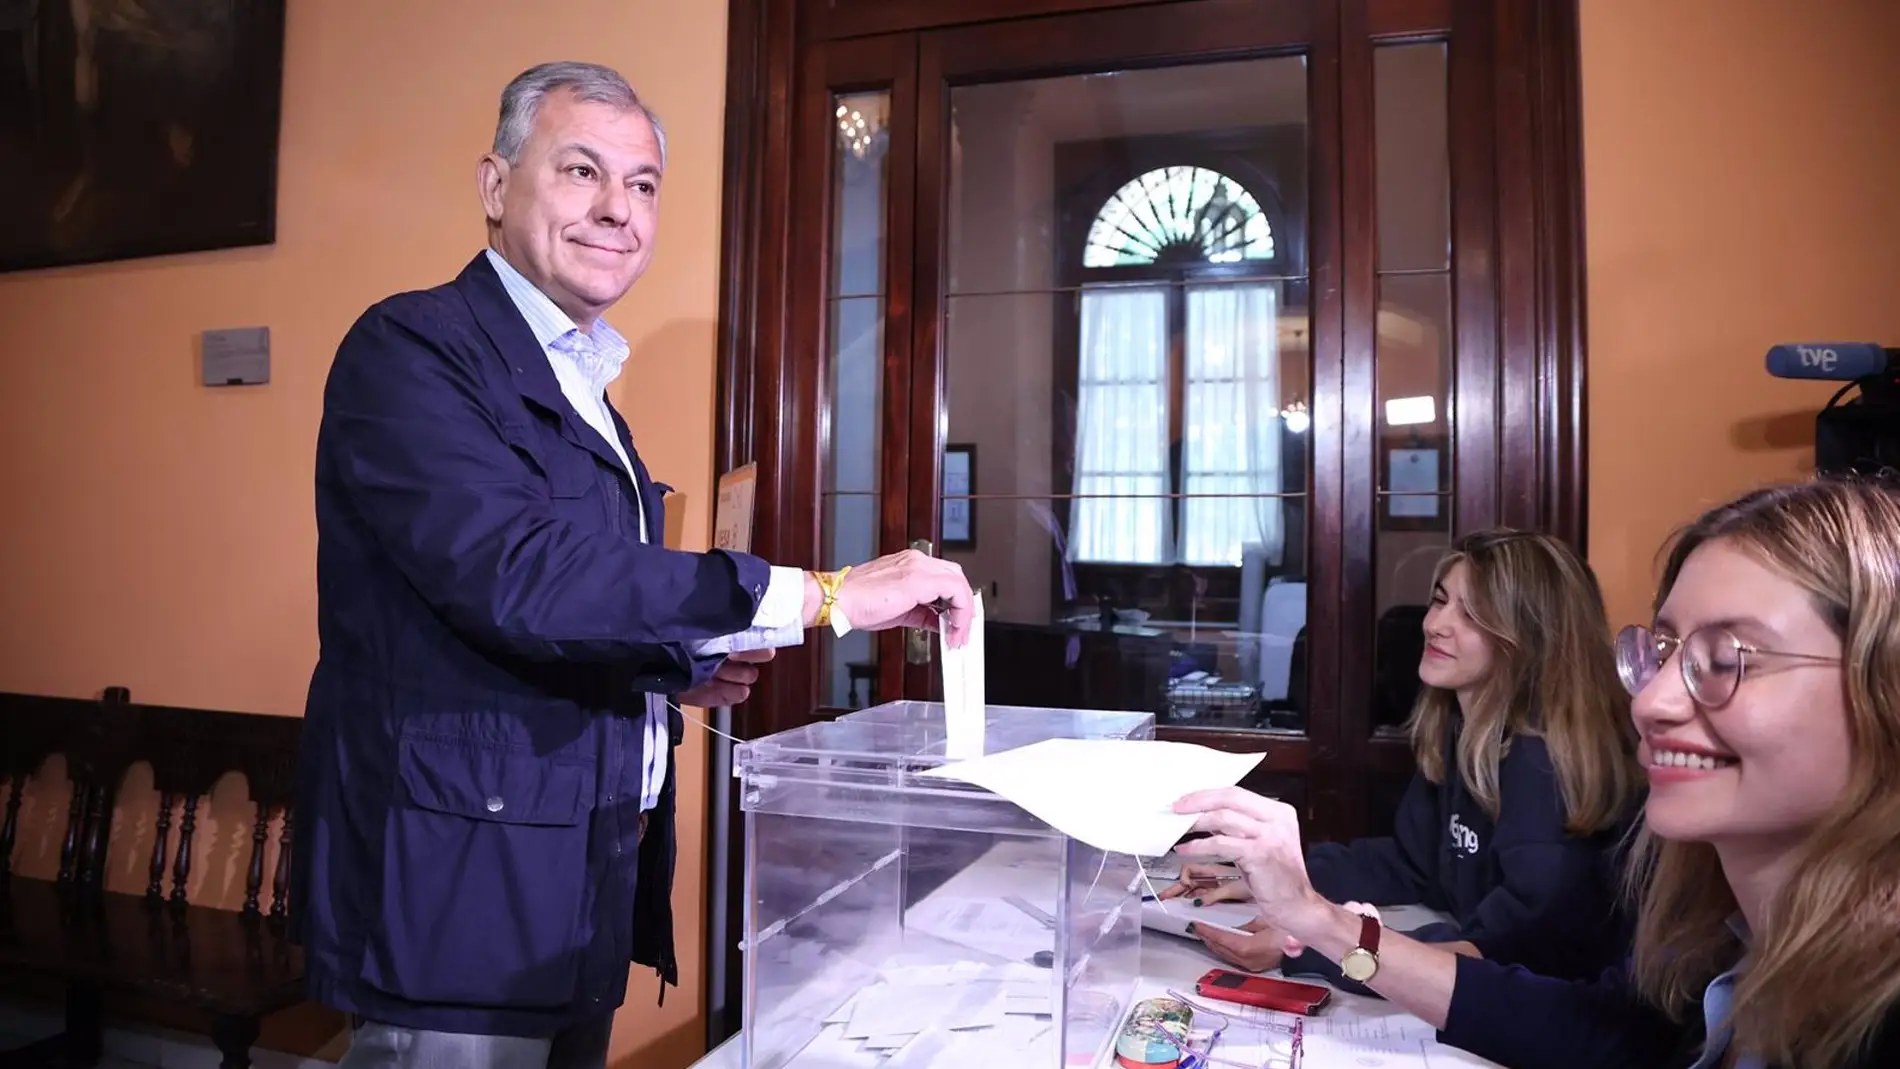 El candidato popular Jose Luis Sanz vota en el Ayuntamiento de Sevilla y confía en la victoria en la capital